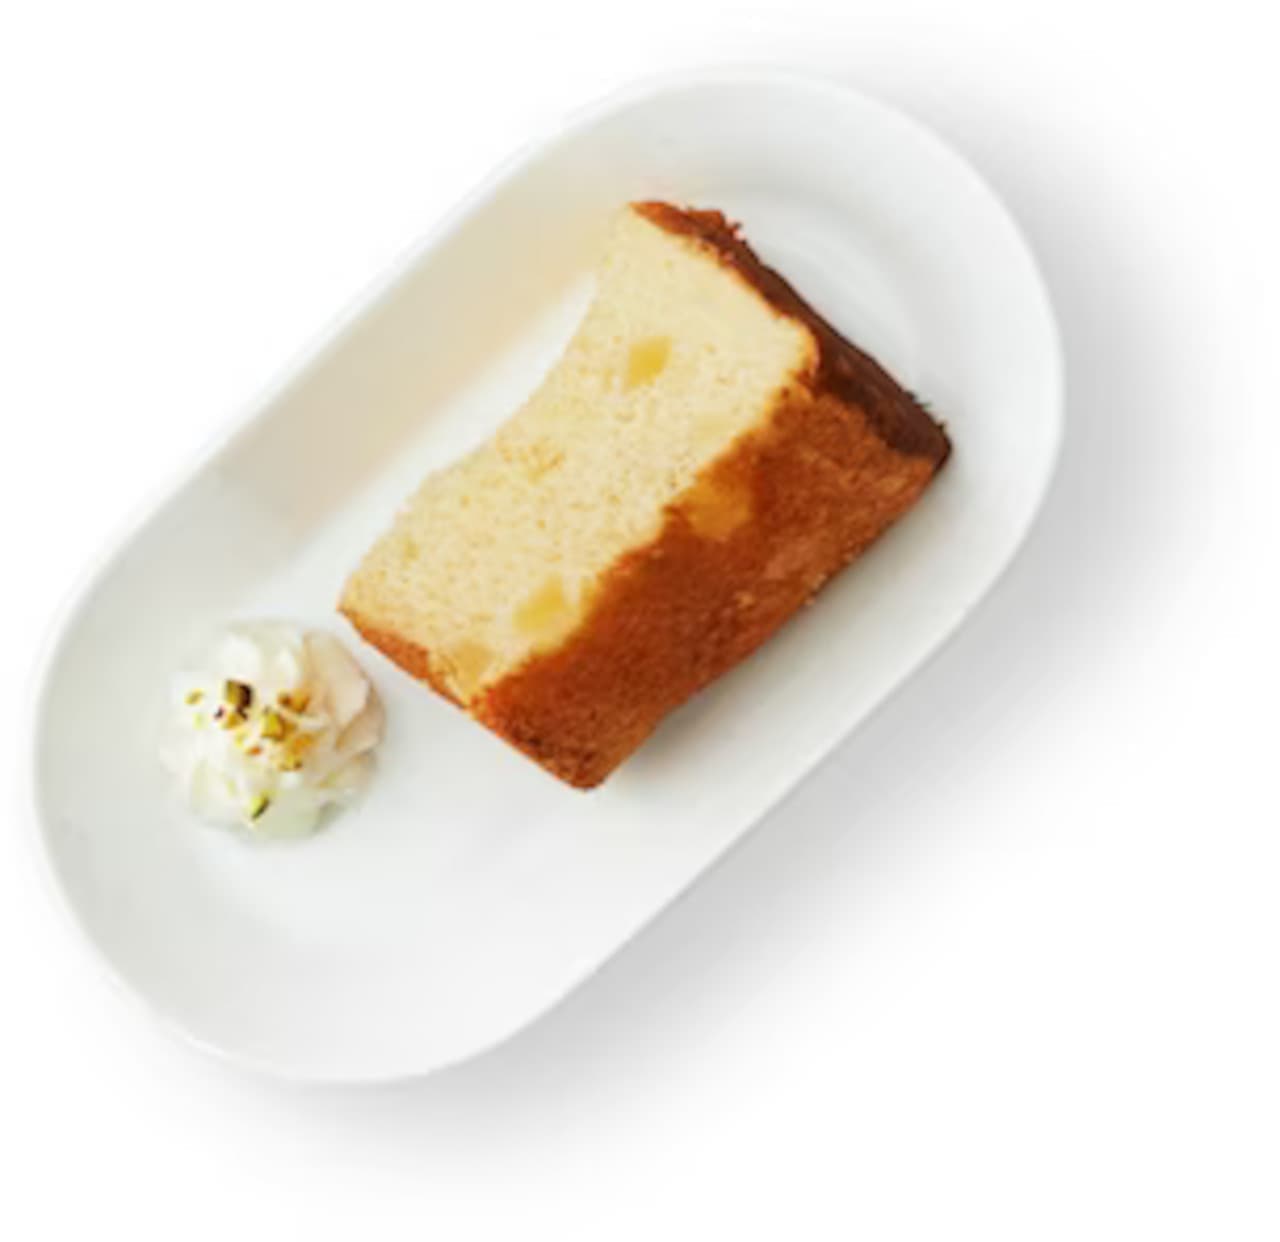 IKEA "Apple Chiffon Cake